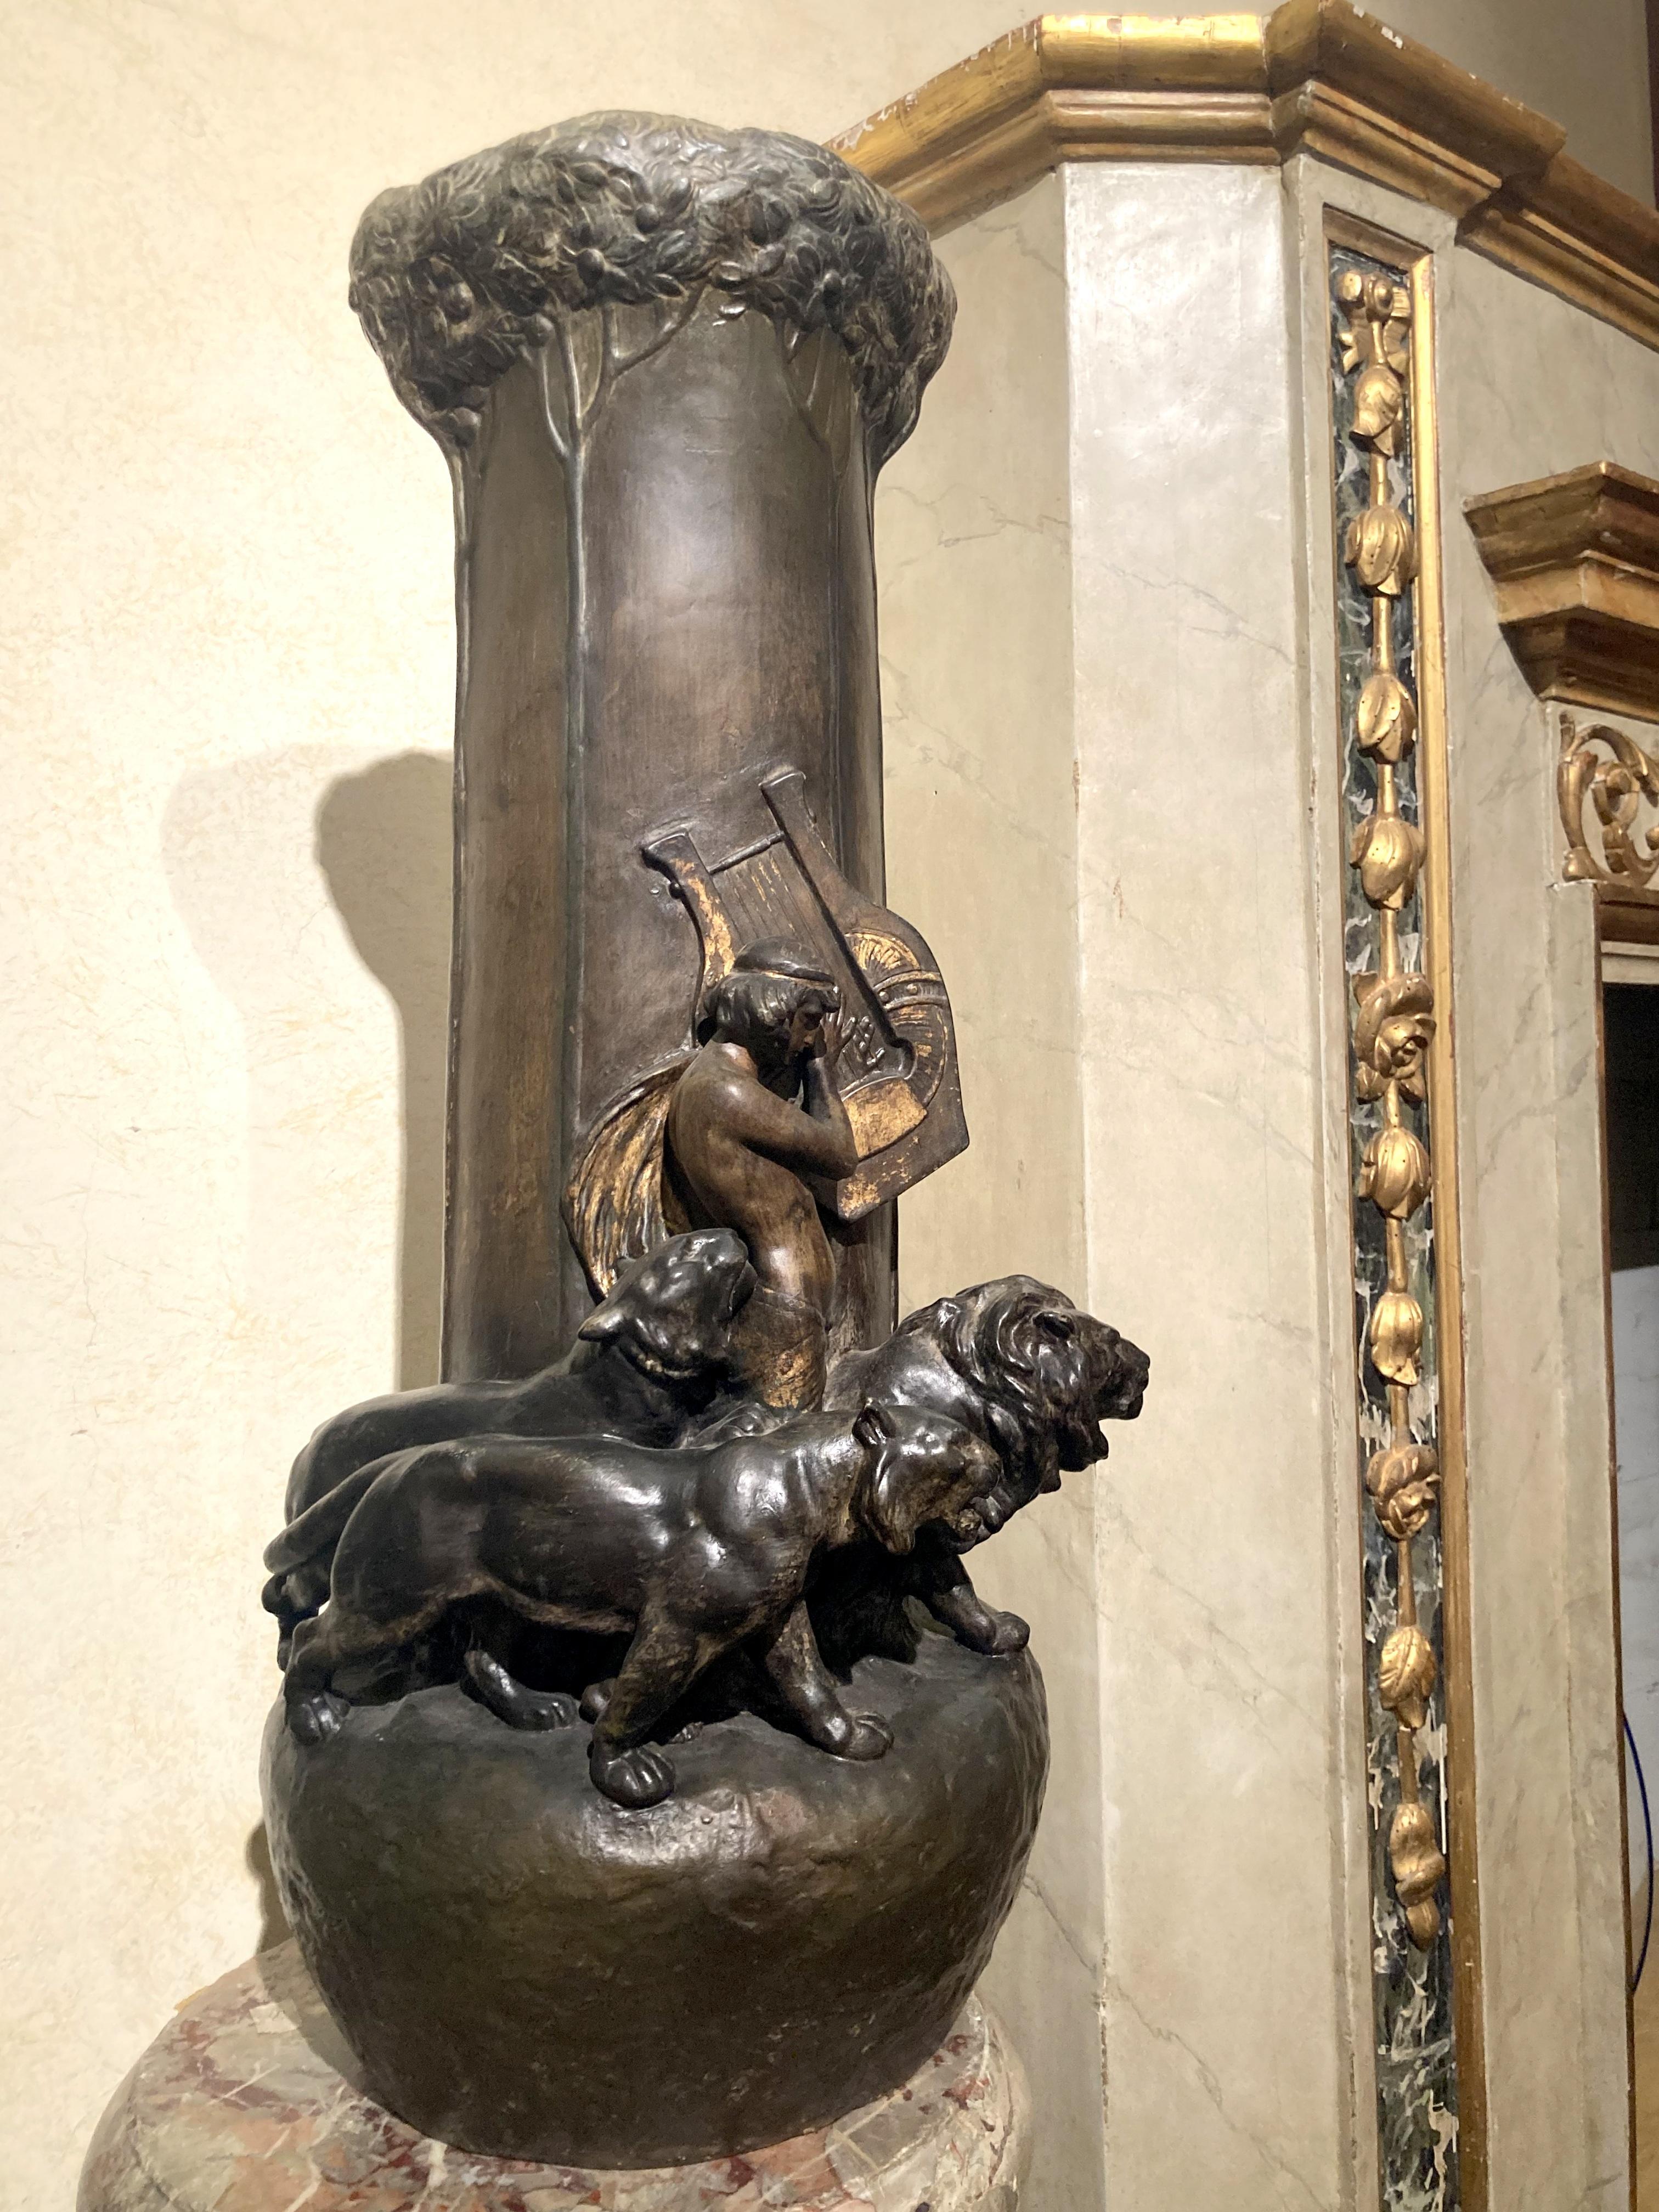 Cette pièce décorative Art Nouveau en terre cuite viennoise peinte à la main est un grand vase d'exposition à thème animalier et mythologique par Adolphe-Jean Lavergne pour Friedrich Goldscheider. 
Il s'agit d'un important vase sculptural, un